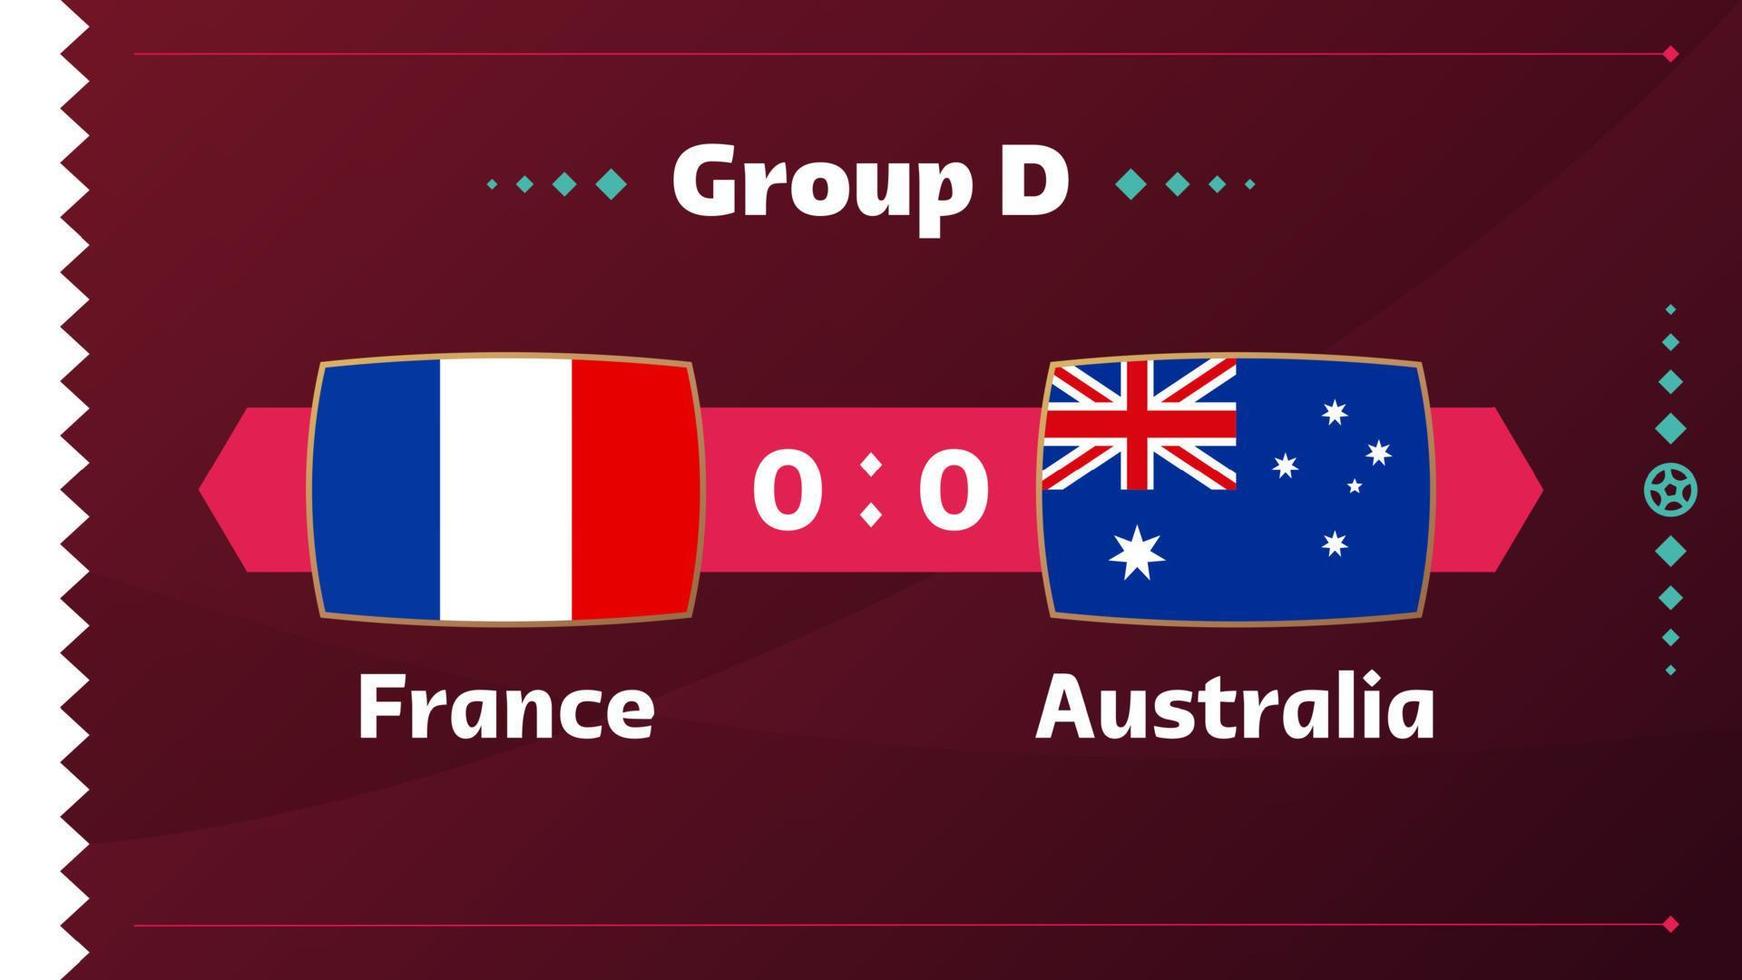 Frankrijk vs Australië wedstrijd. voetbal 2022 wereldkampioenschap wedstrijd versus teams op voetbalveld. intro sport achtergrond, kampioenschap competitie finale poster, vlakke stijl vectorillustratie vector